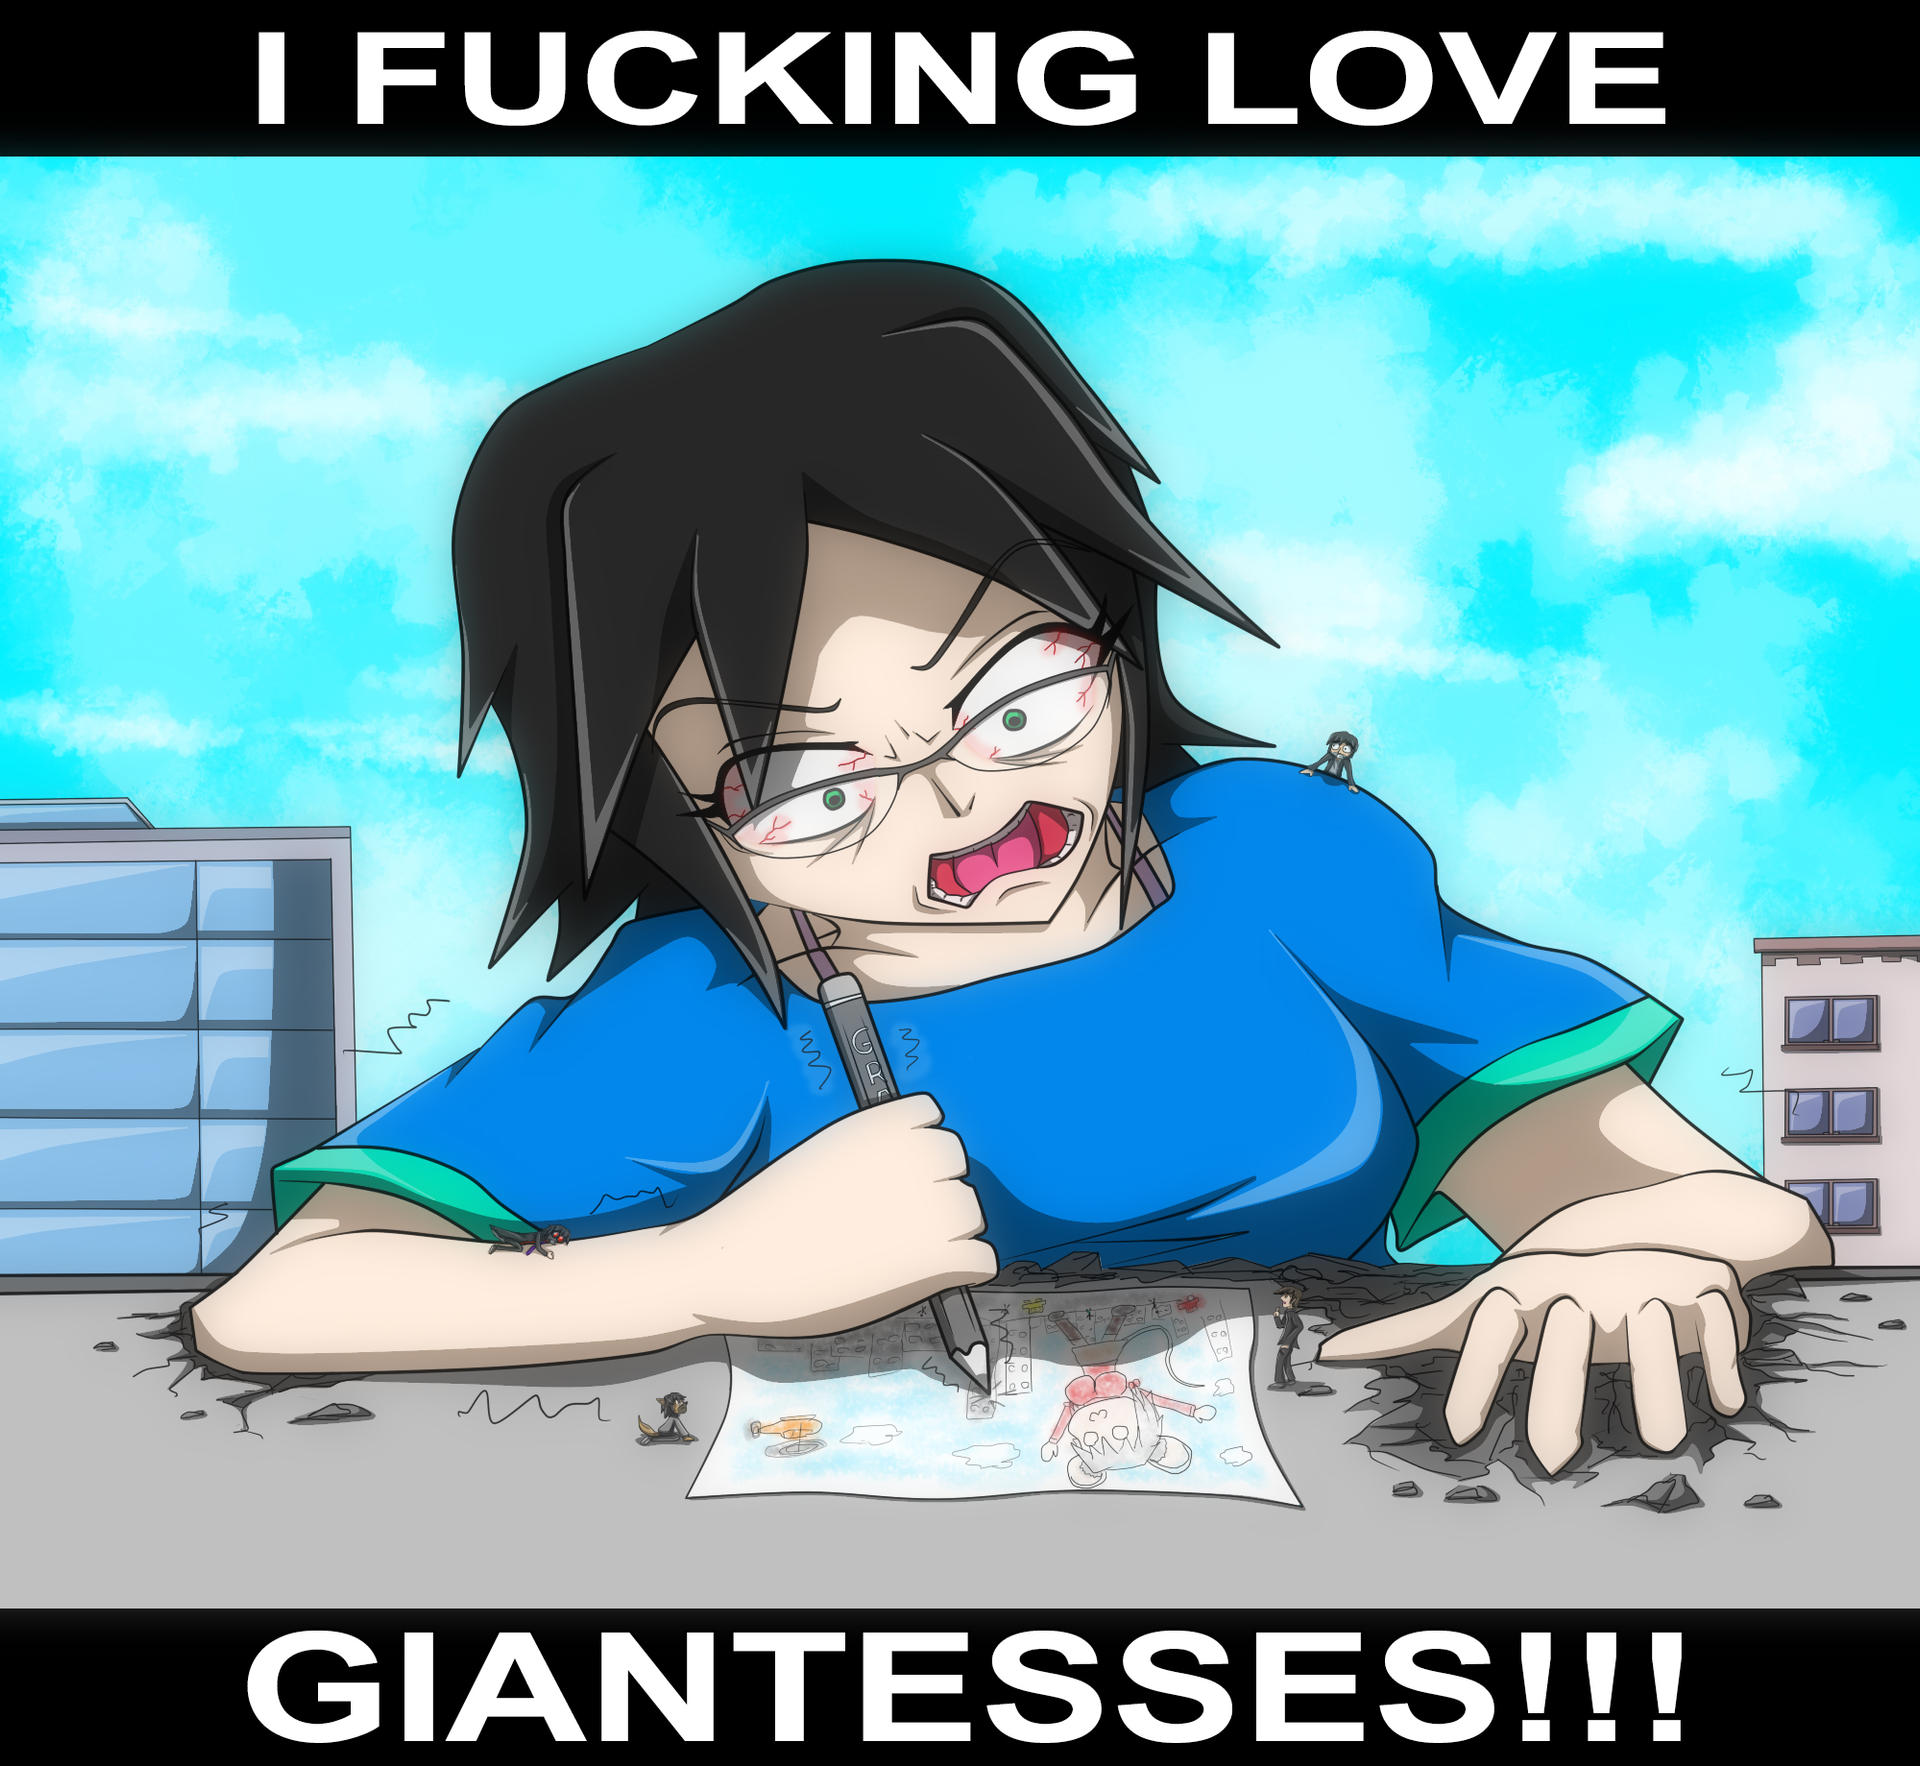 Jenny Loves Giantesses